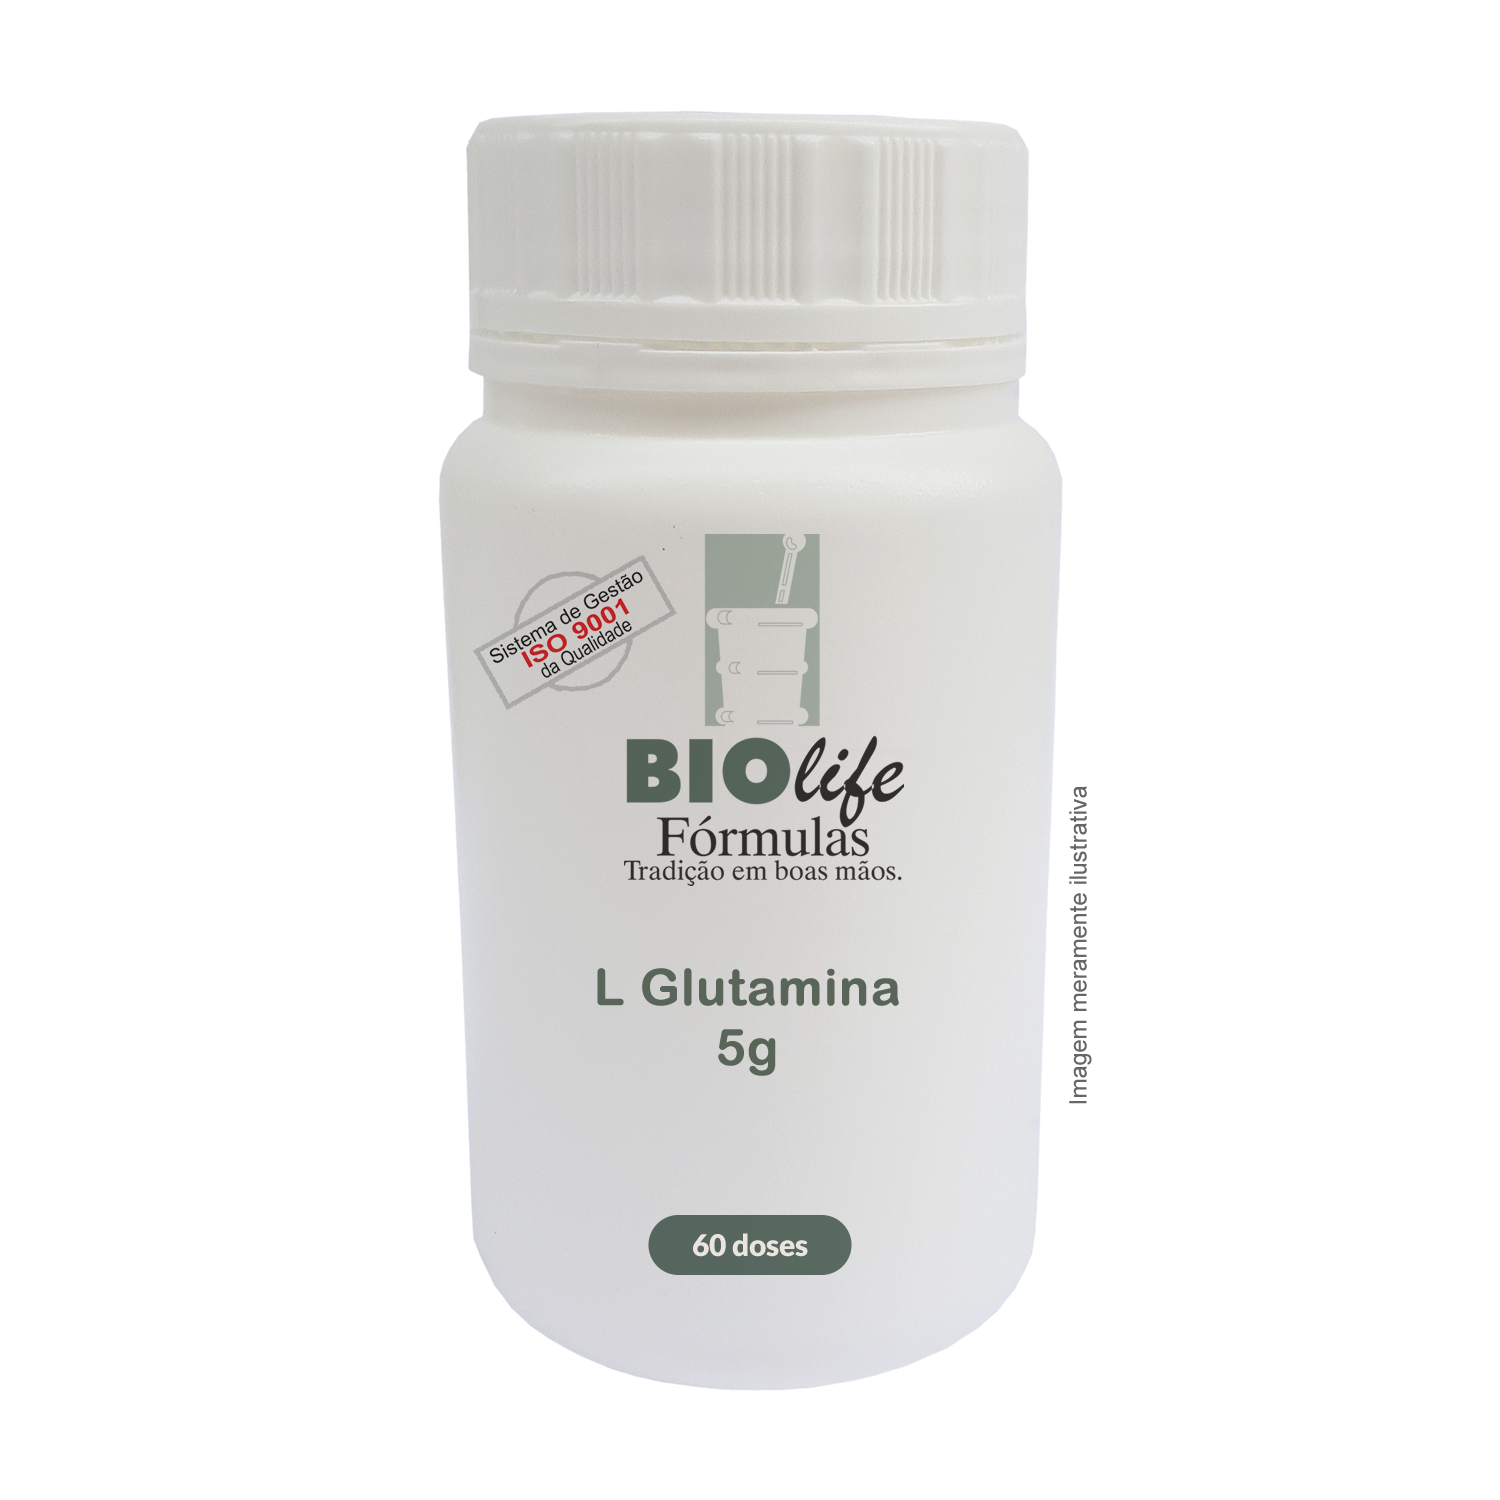 L Glutamina5g - 60 doses - Aumento da Massa Muscular - BioLife